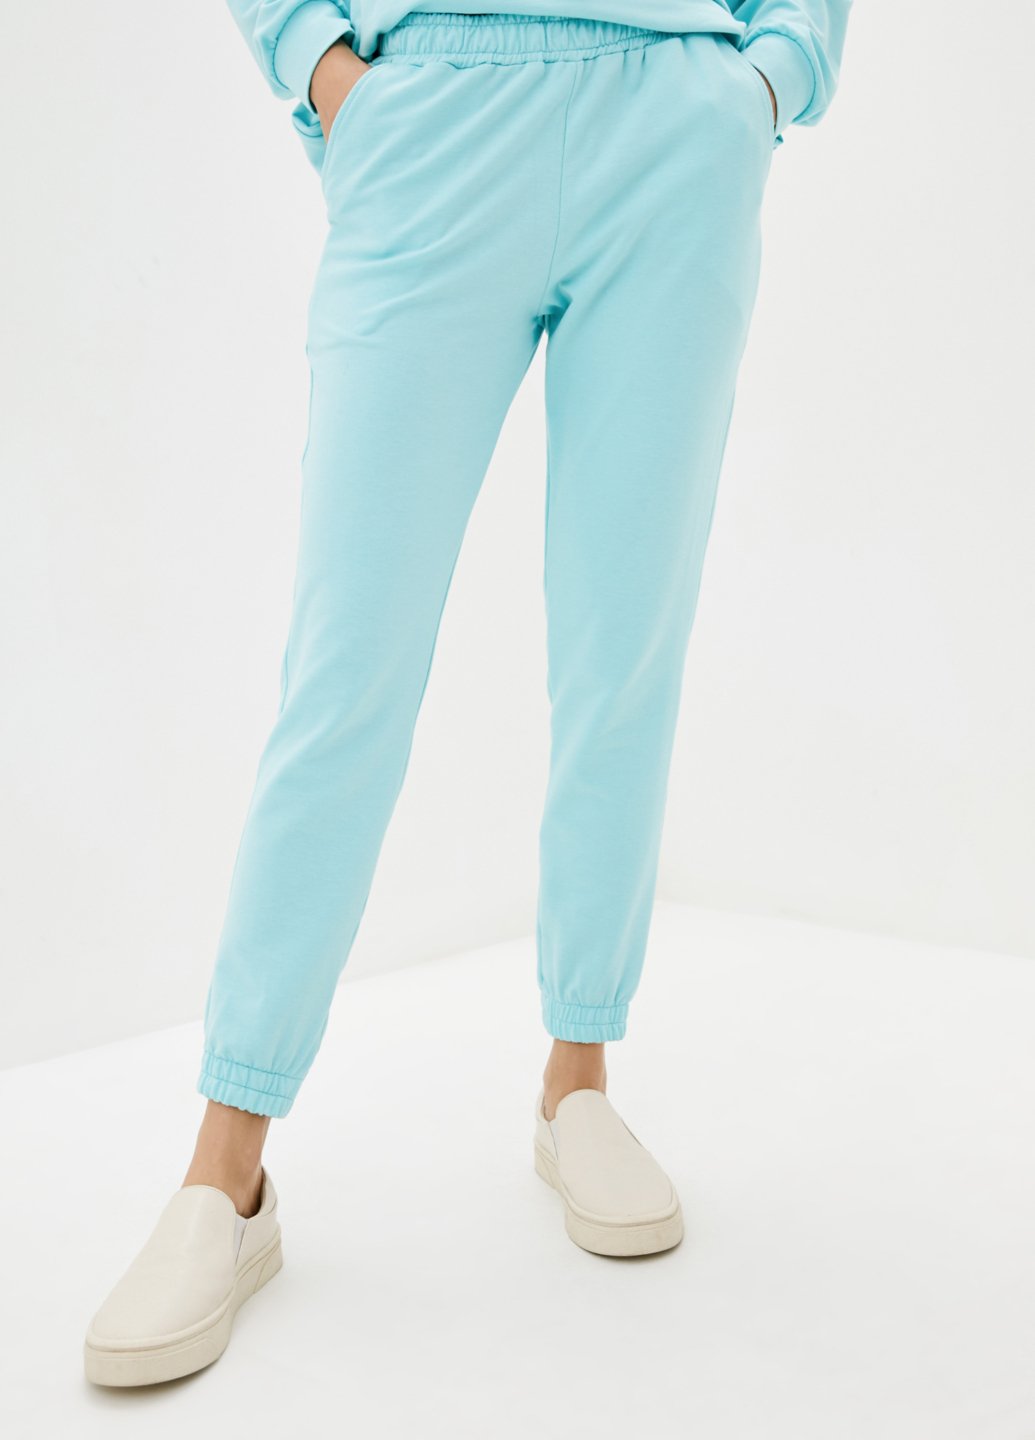 Купить Спортивные штаны женские Merlini Латина 600000015 - Голубой, 46-48 в интернет-магазине